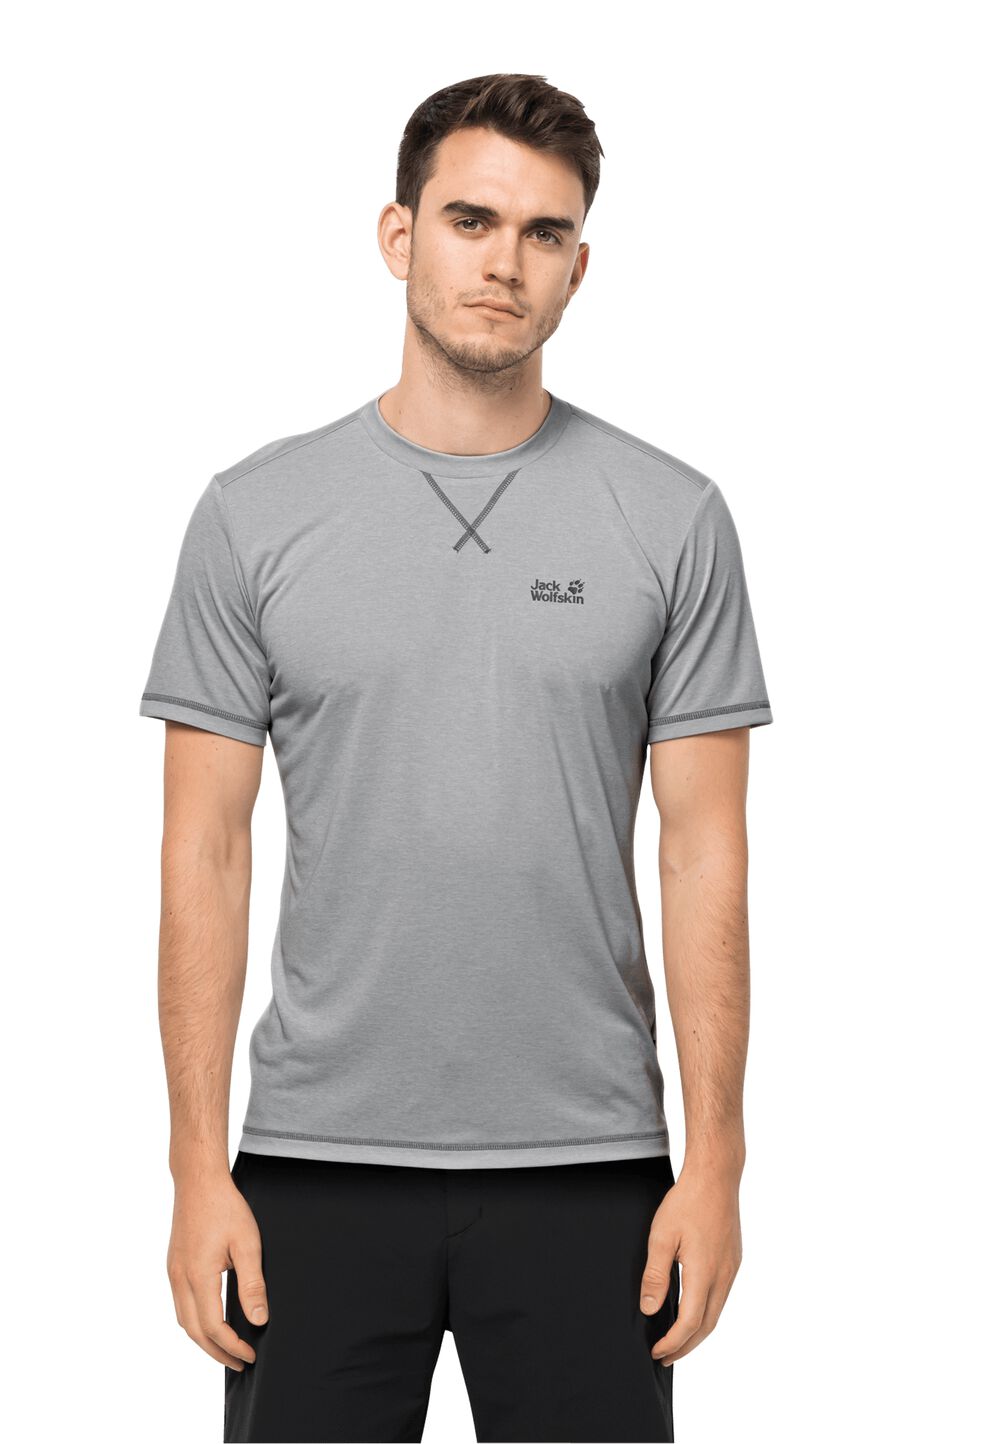 T-shirt technique hommes Crosstrail T-Shirt Men S gris silver grey